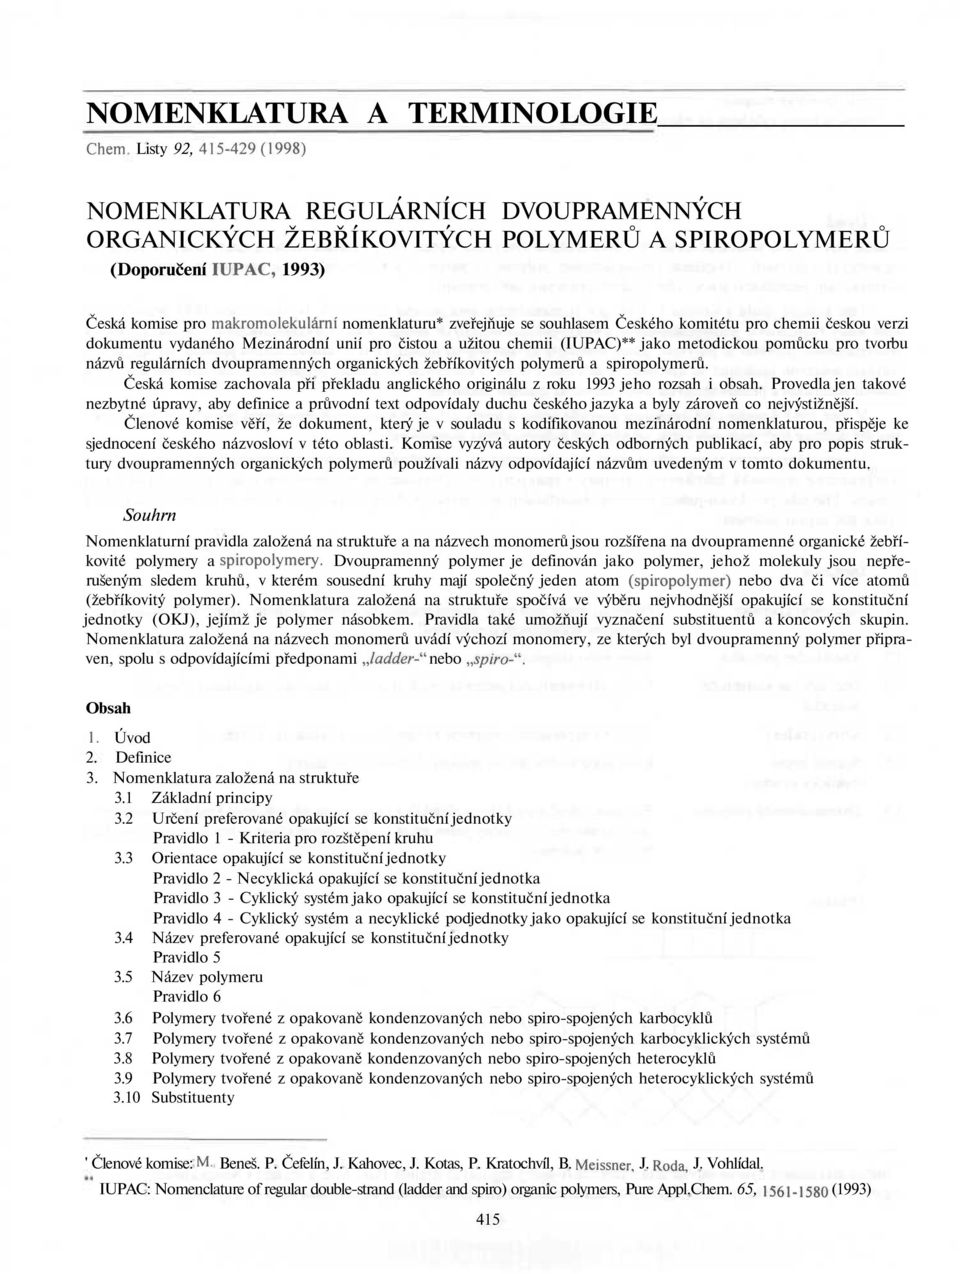 se souhlasem Českého komitétu pro chemii českou verzi dokumentu vydaného Mezinárodní unií pro čistou a užitou chemii (IUPAC)** jako metodickou pomůcku pro tvorbu názvů regulárních dvoupramenných